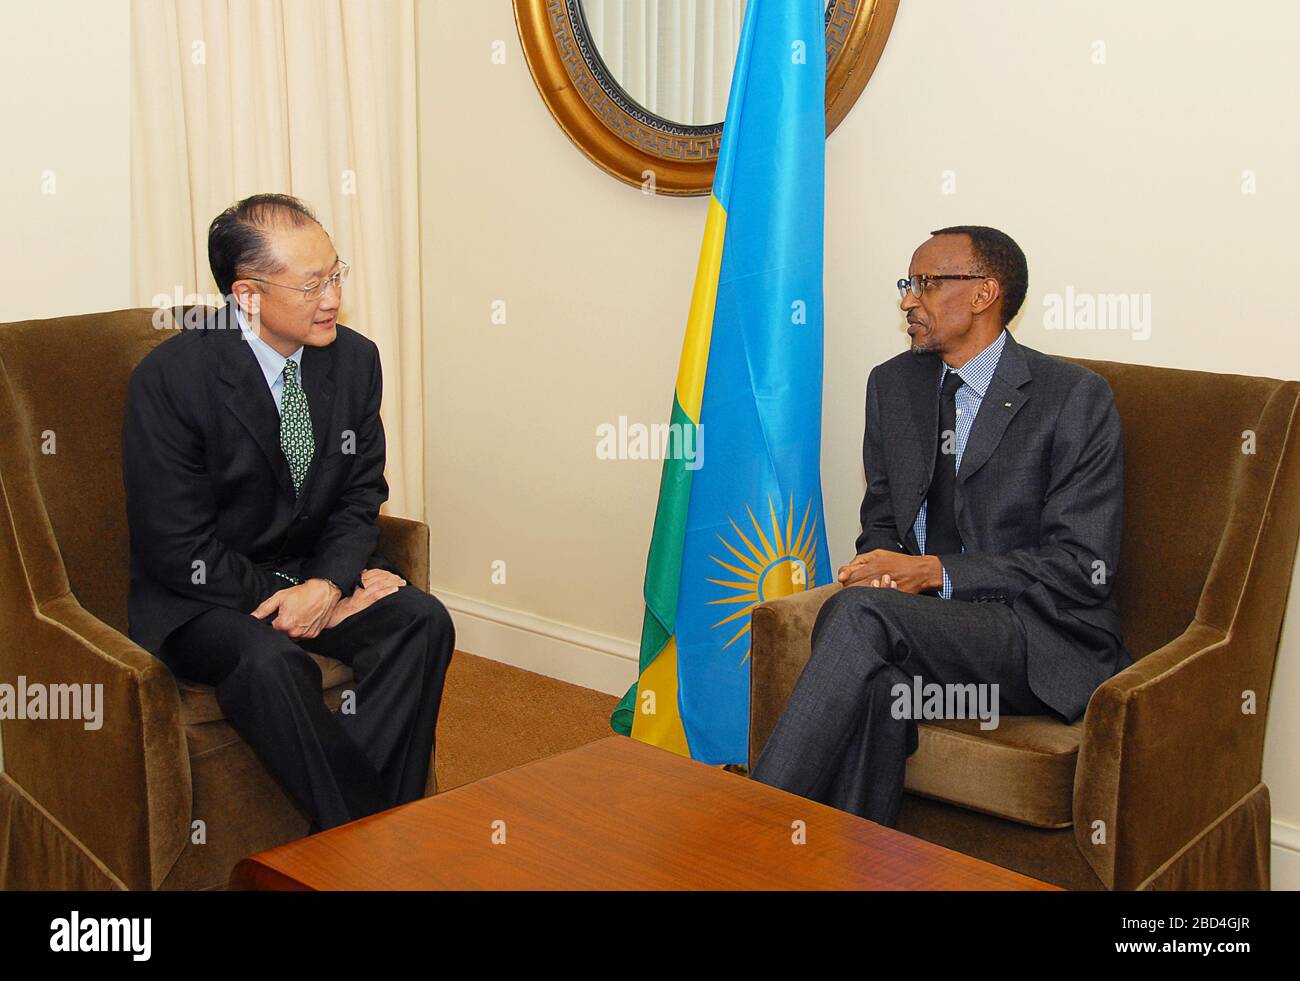 Präsident Obamas Kandidat für die Präsidentschaft der Weltbank, Dr. Jim Yong Kim, traf sich mit dem ruandischen Präsidenten Paul Kagame Stockfoto